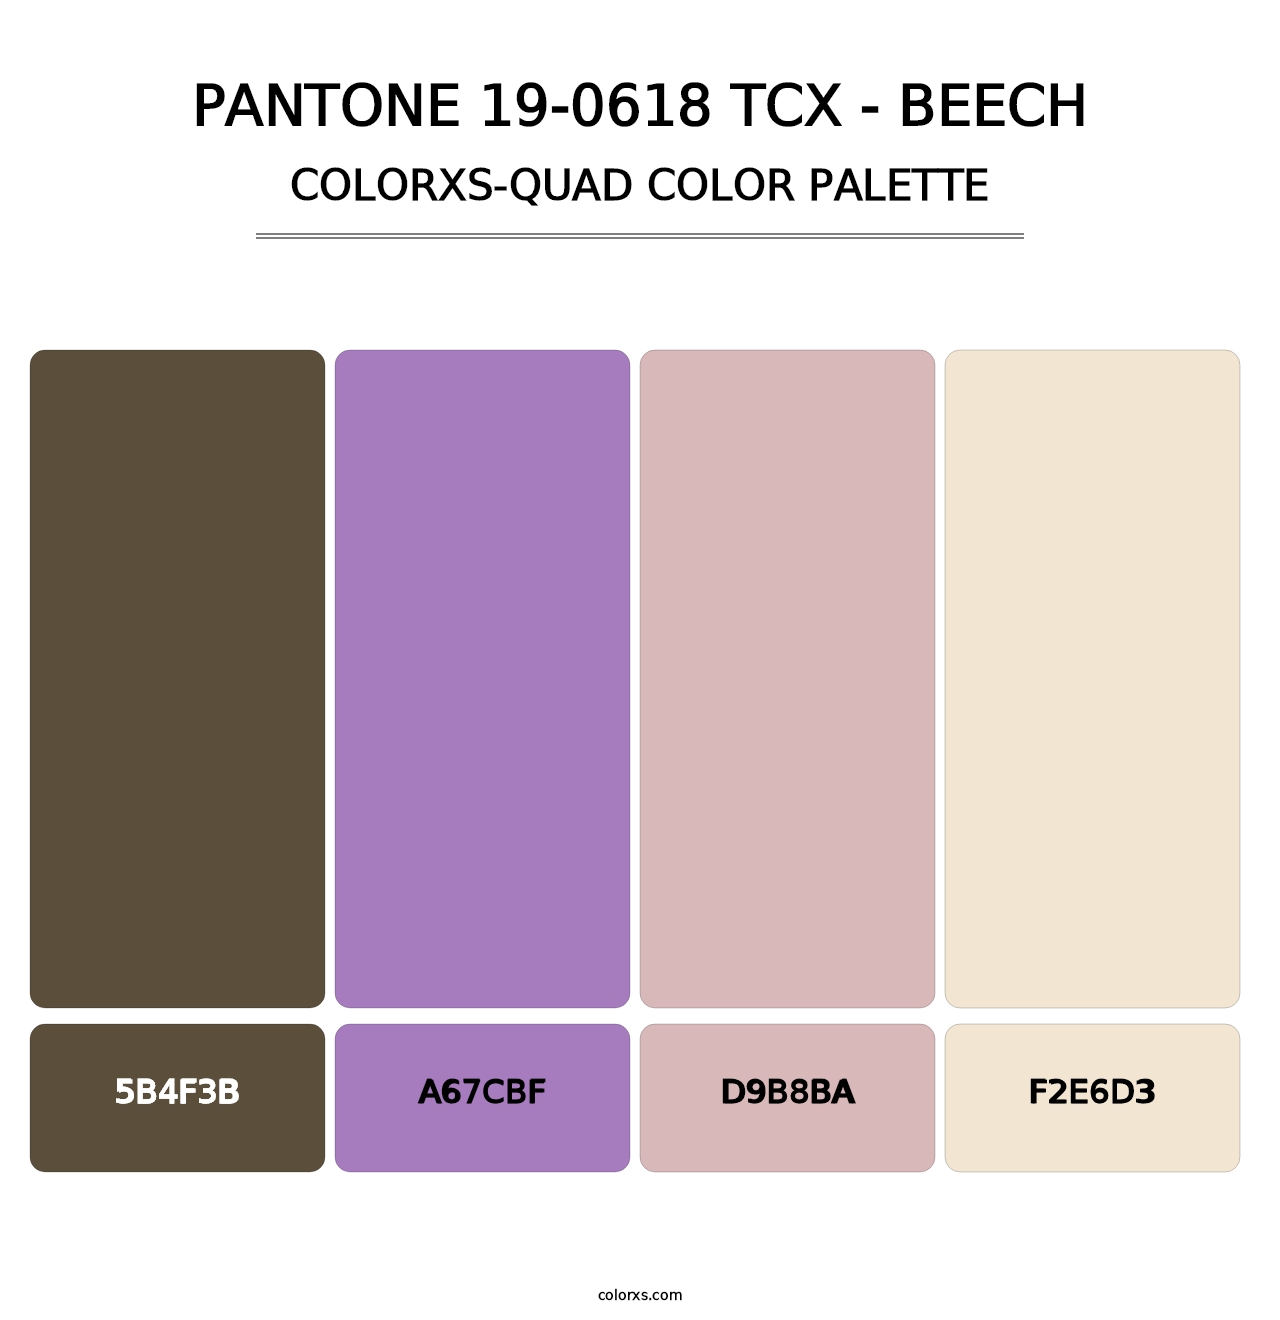 PANTONE 19-0618 TCX - Beech - Colorxs Quad Palette